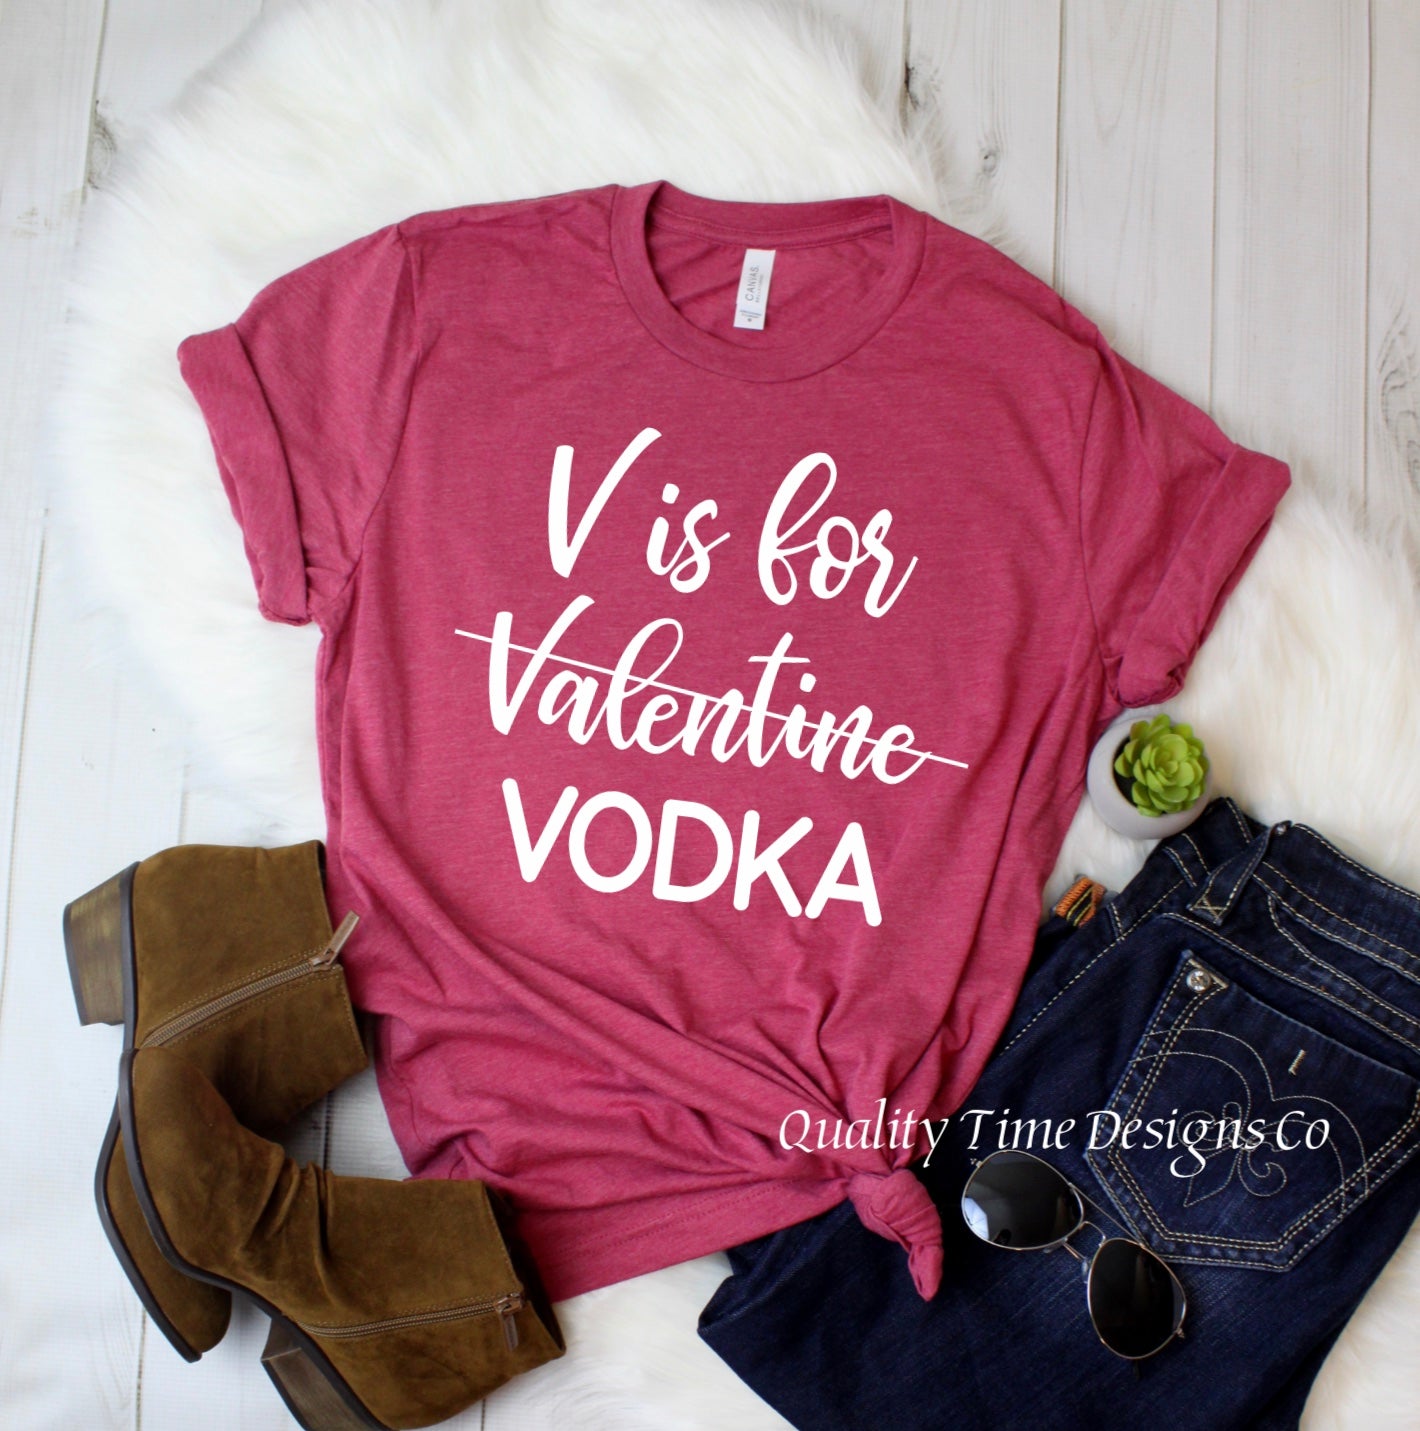 V is for Vodka t-shirt 